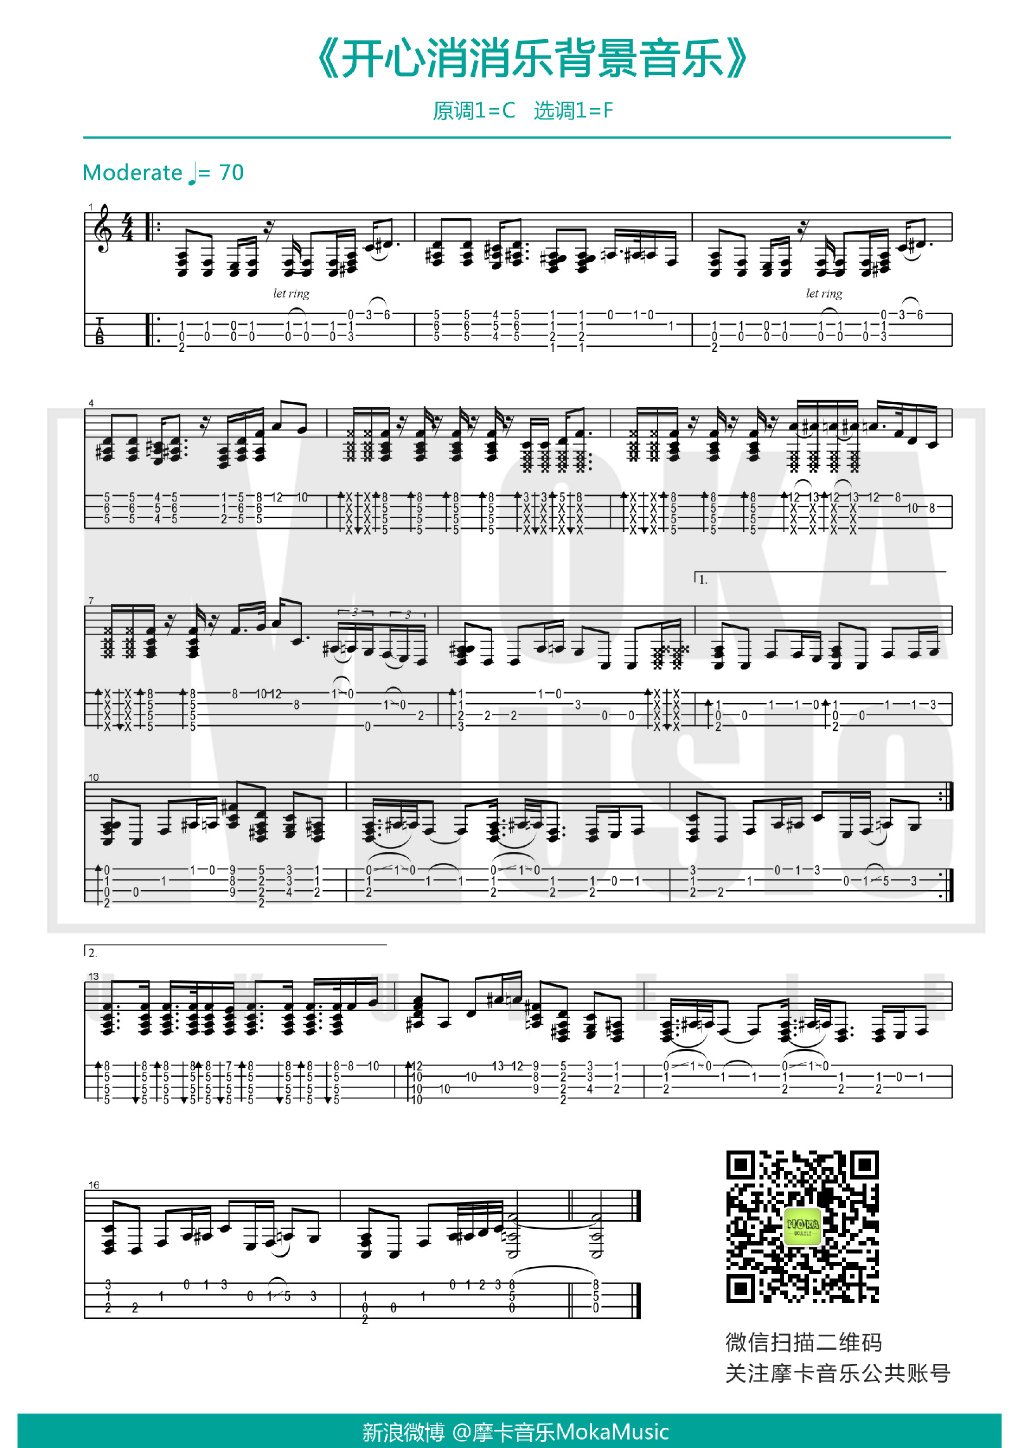 开心消消乐背景音乐 摩卡音乐 ukulele谱-C大调音乐网